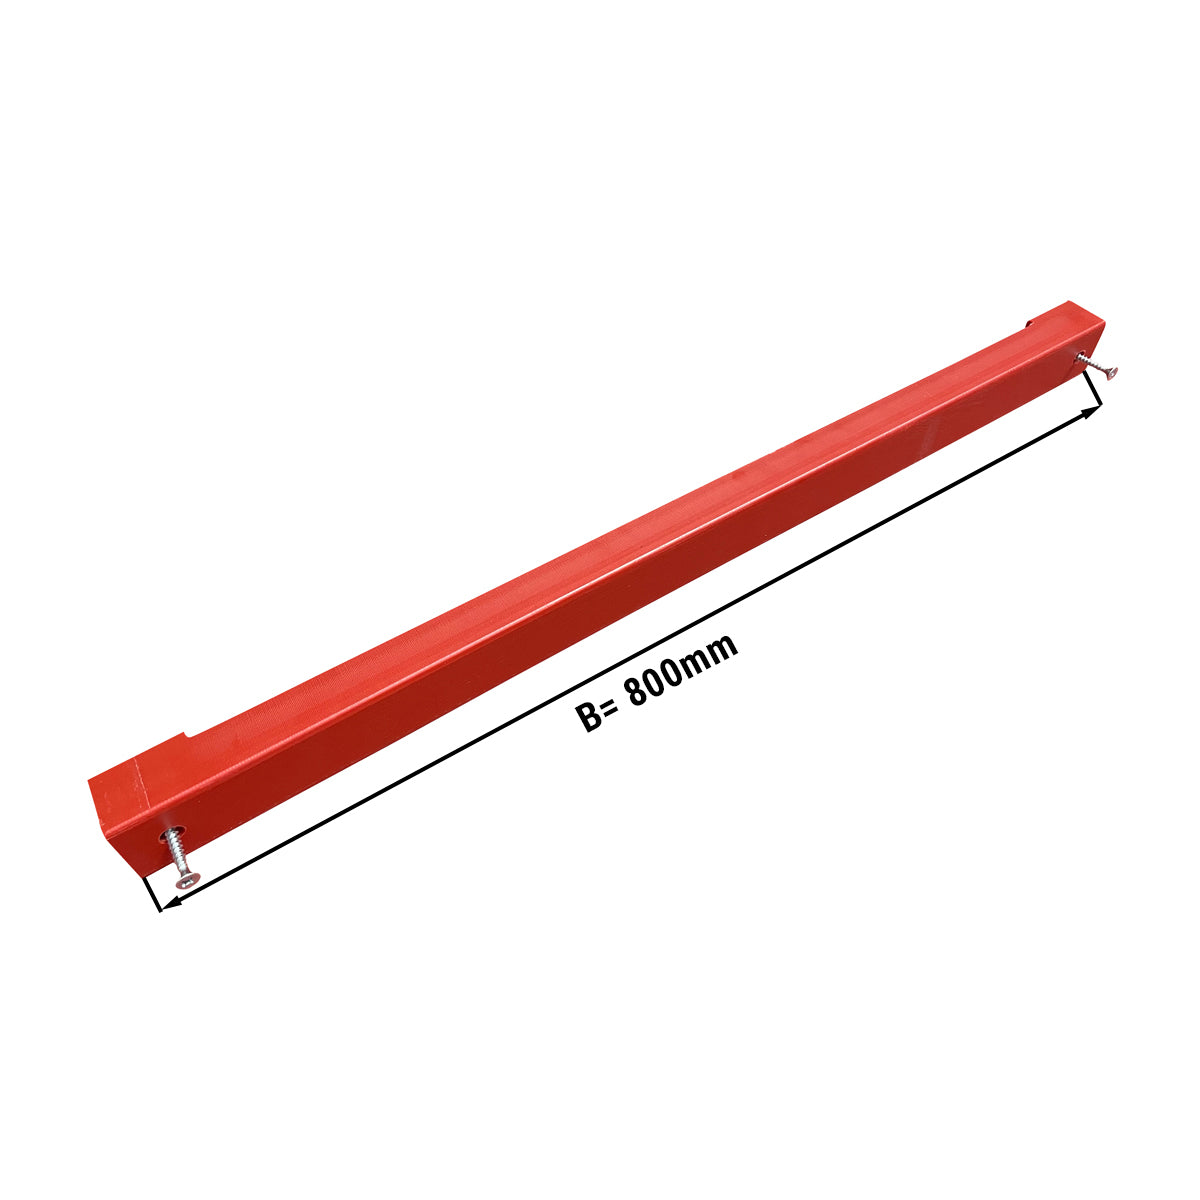 Knivholder til skjærebrett - 80 cm - rød